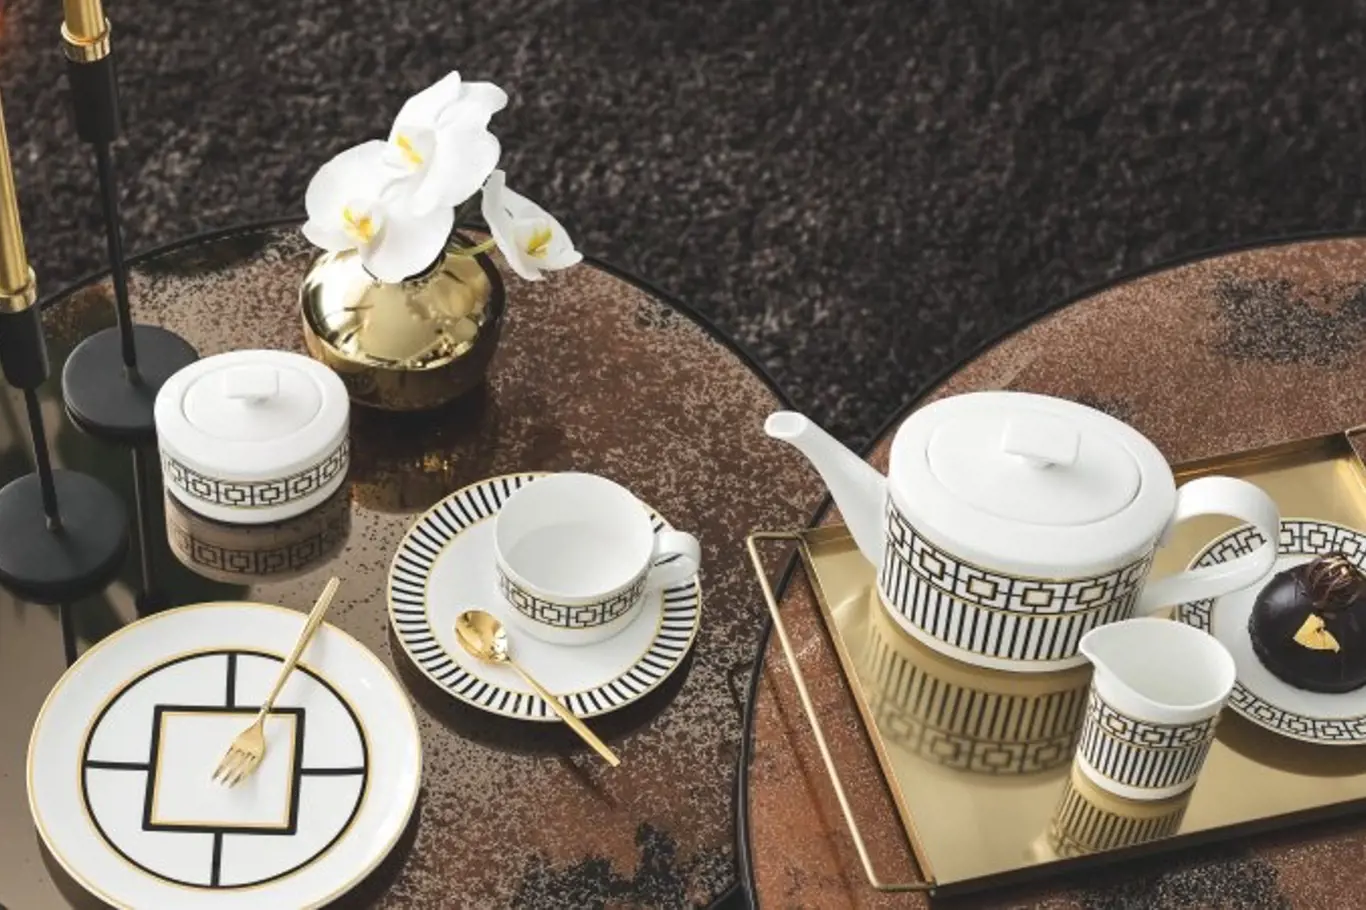 Kostní porcelán zdobený 20karátovým zlatem kolekce MetroChic značky Villeroy & Boch zaujme geometrickým dekorem.